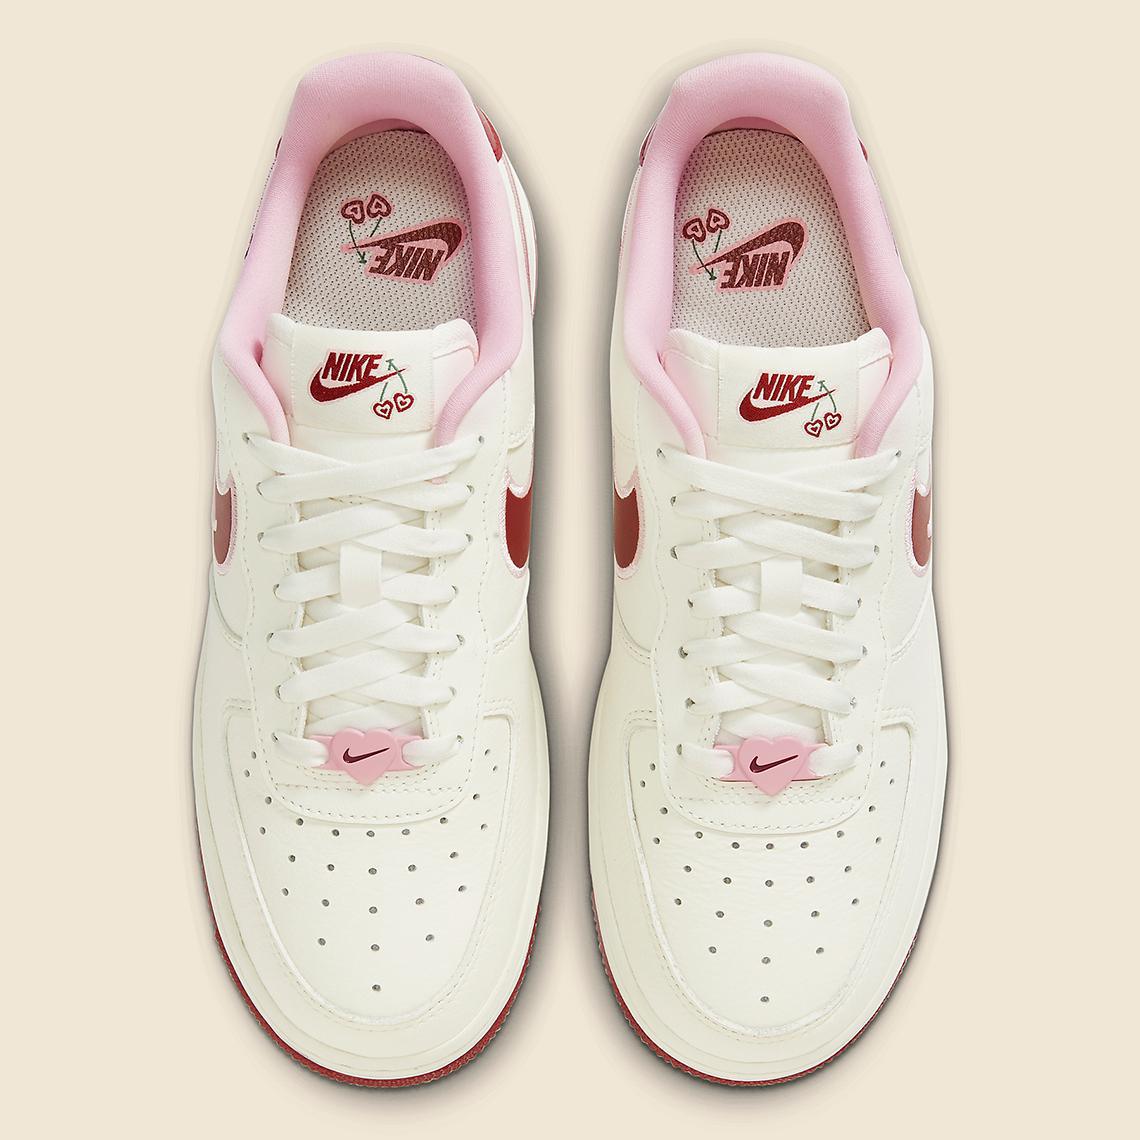 La Nike Air Force 1 Low "Valentine's Day" 2023 est ornée de cerises en forme de cœur.